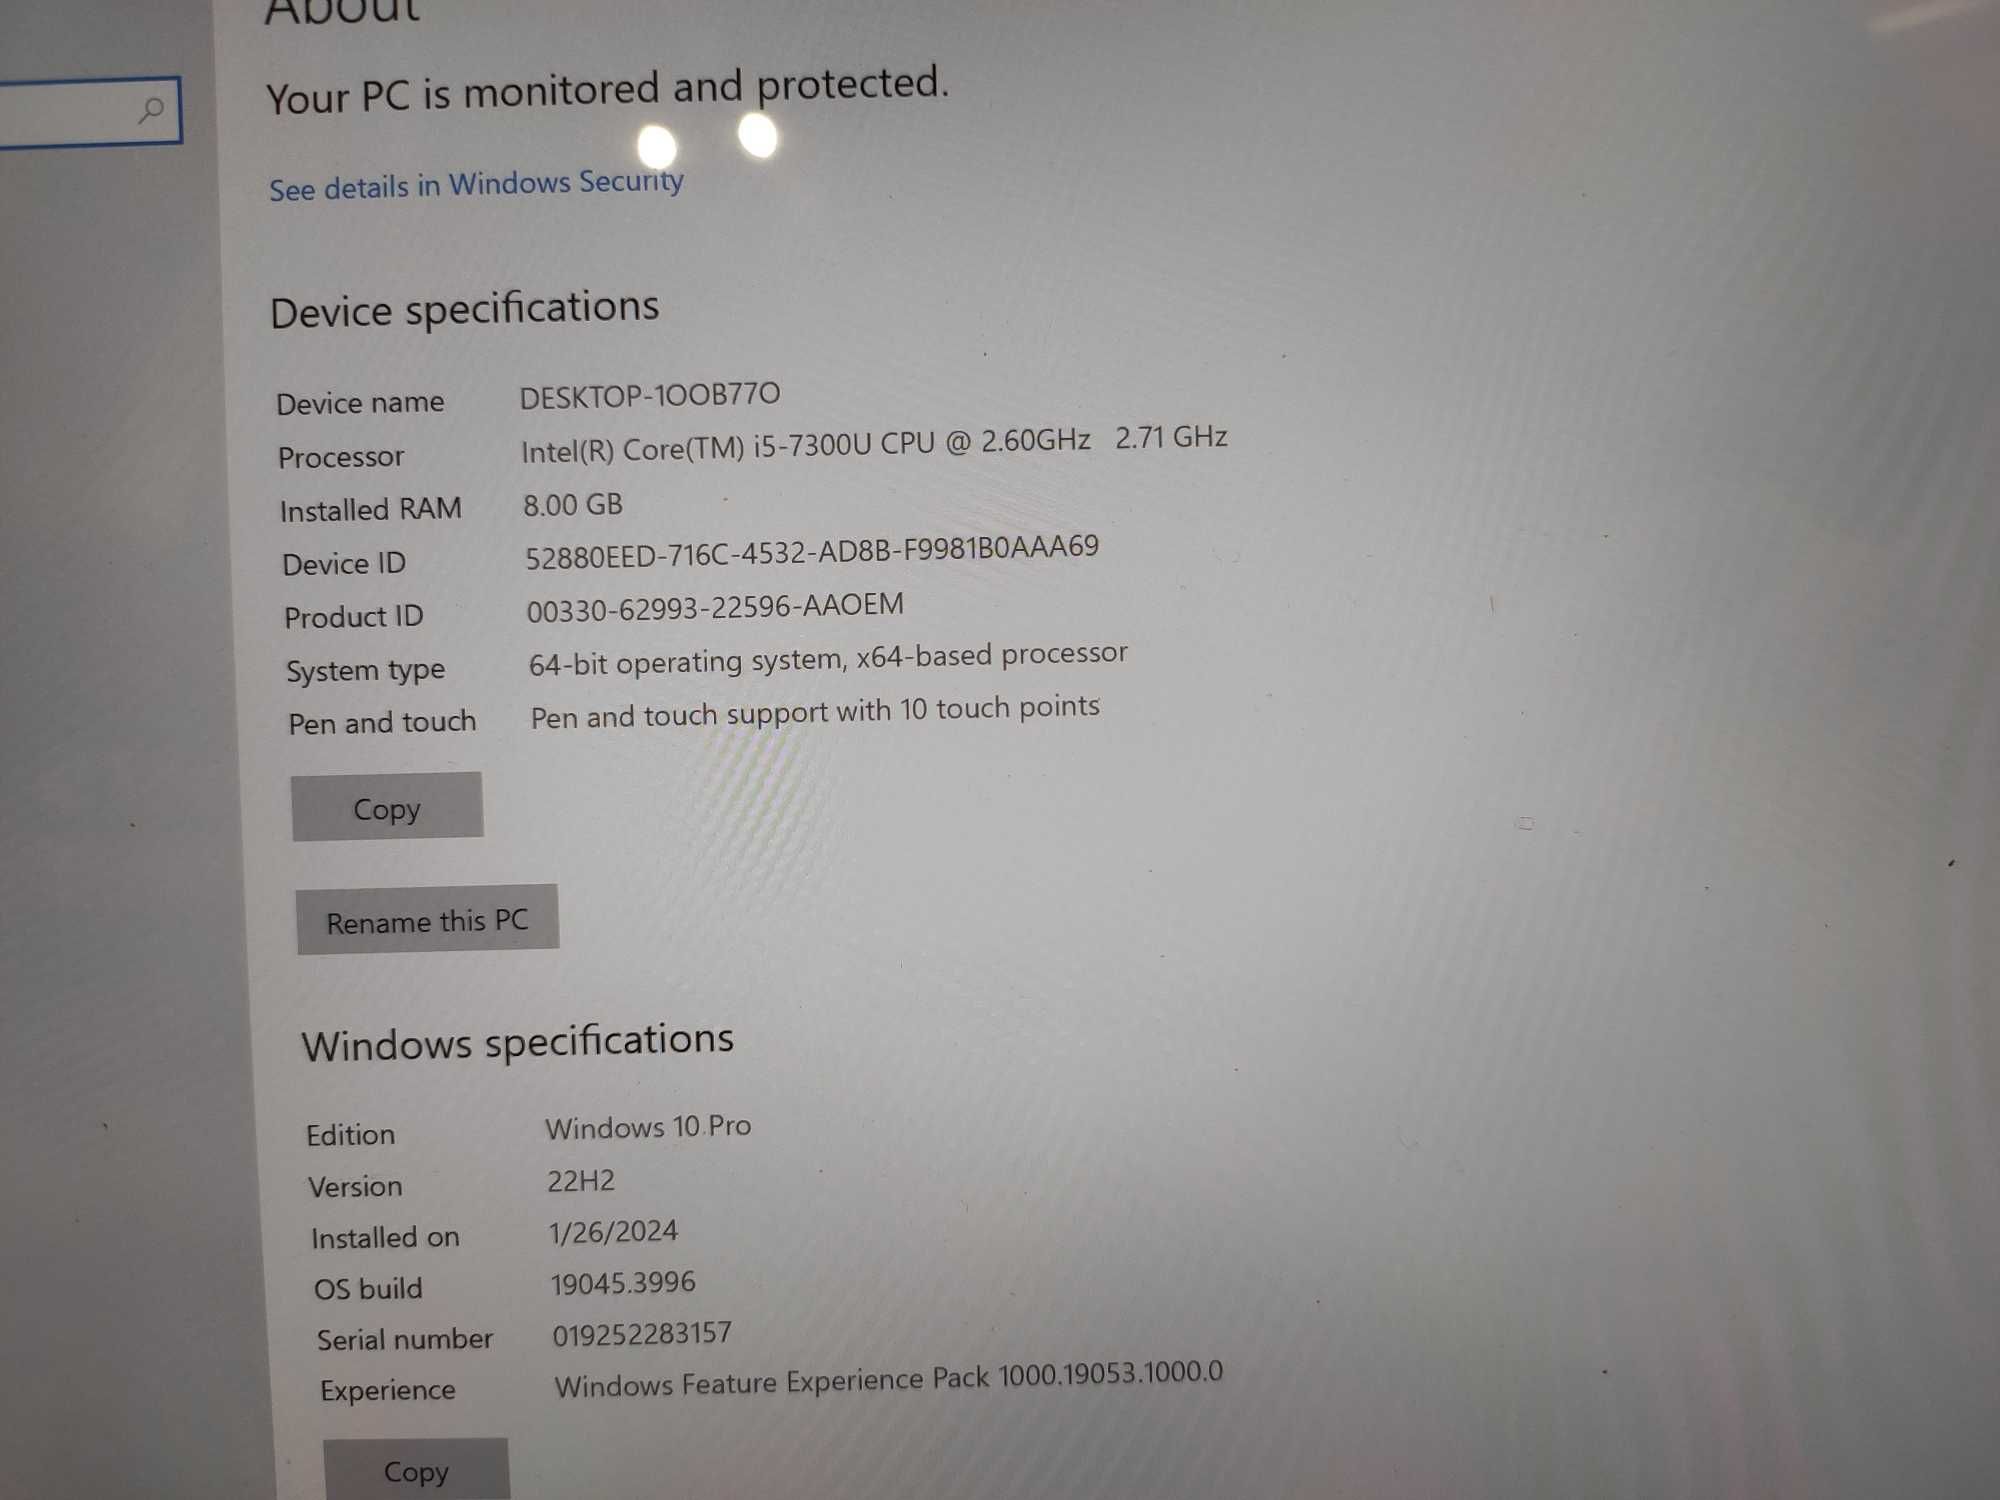 Microsoft Surface Book 2, 13.5'', Core i5-7300U 2.60GHz, 8GB, 256GB